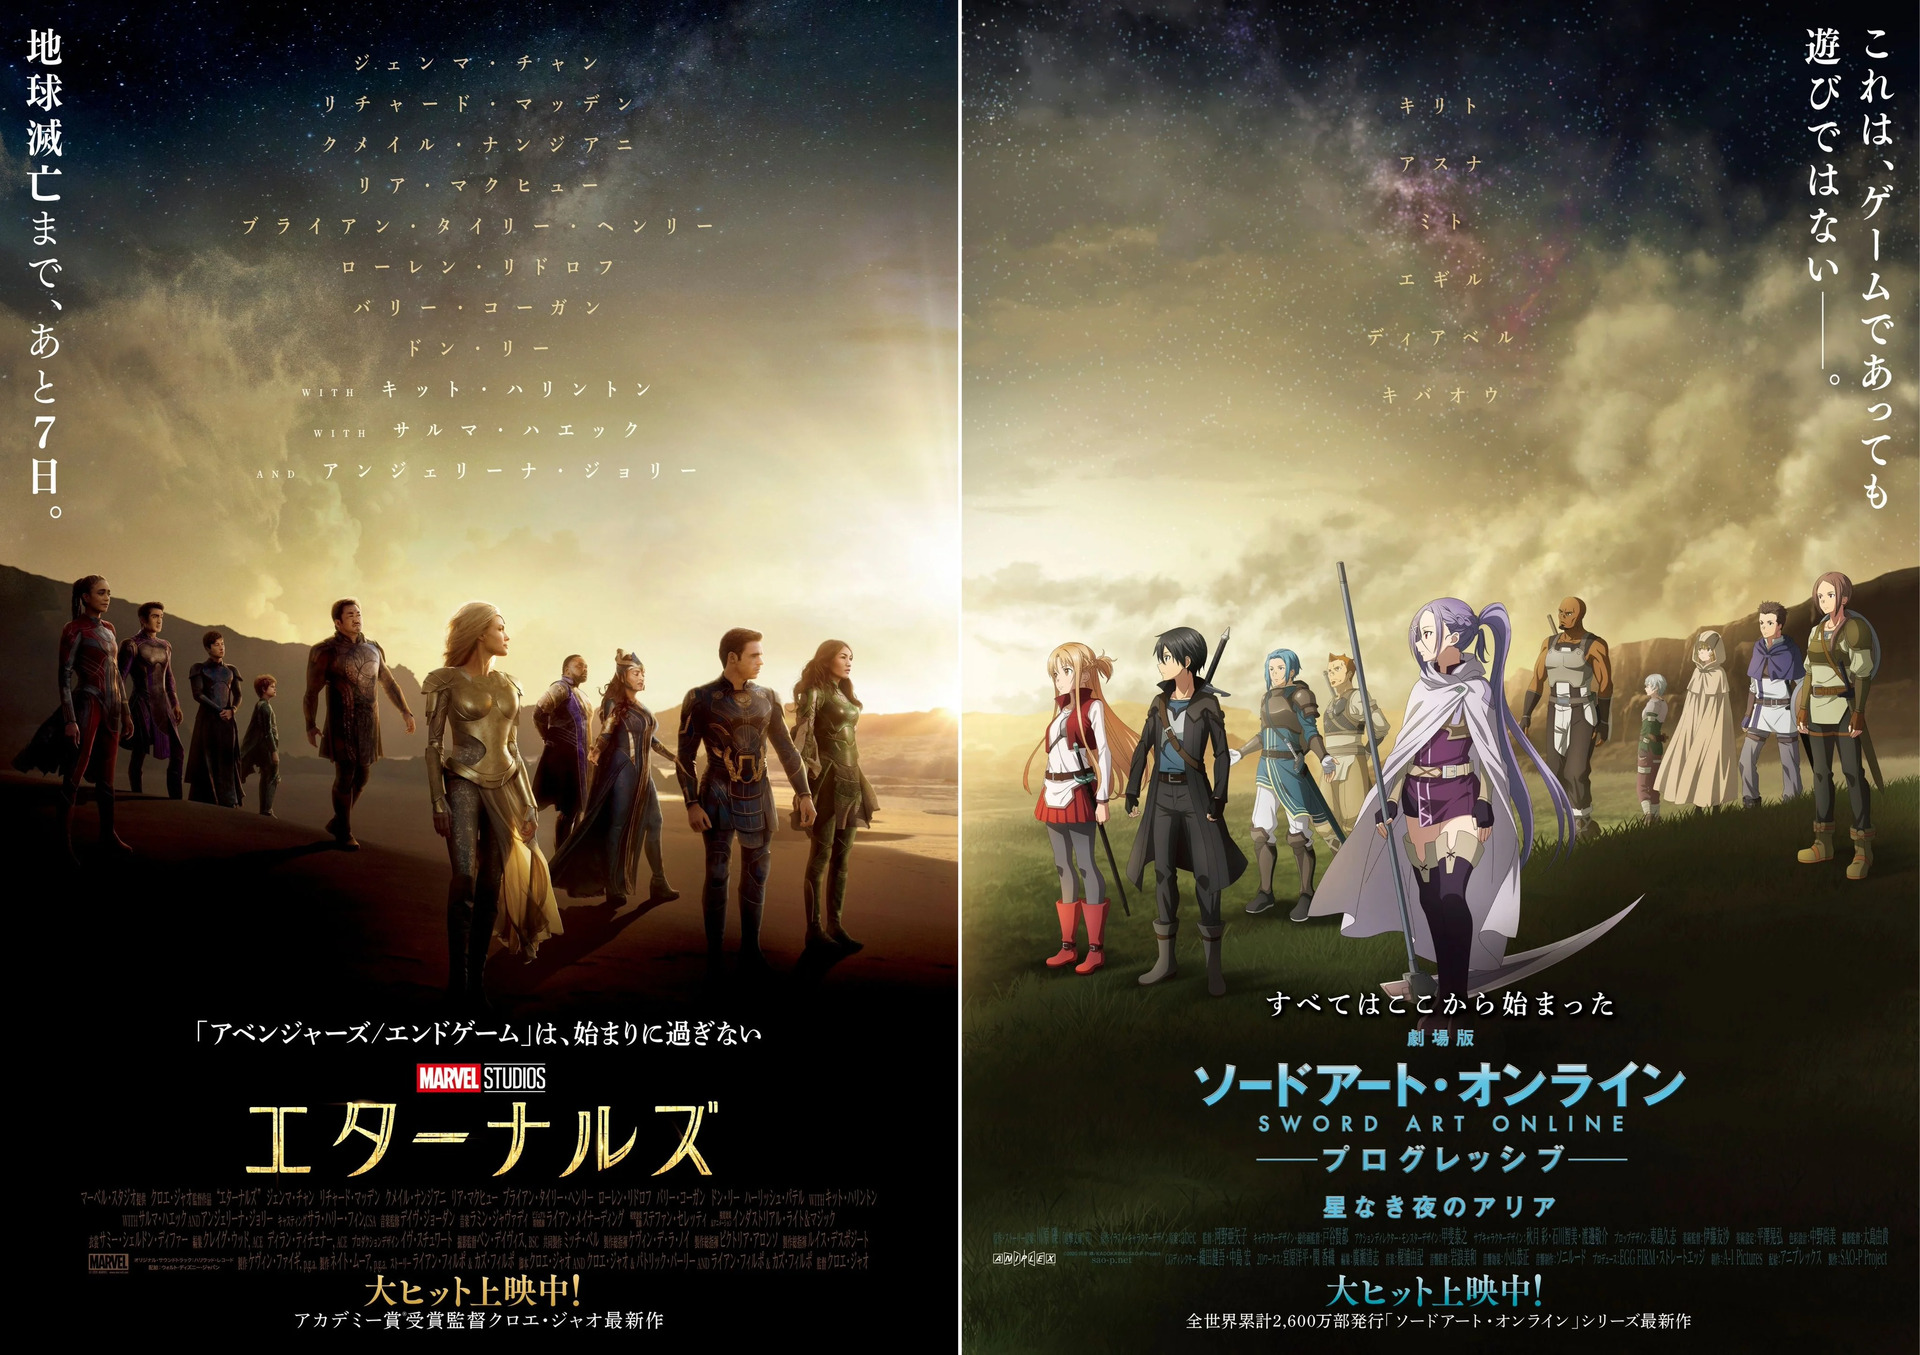 Com estreia para 30 de outubro, filme de Sword Art Online revela novo poster